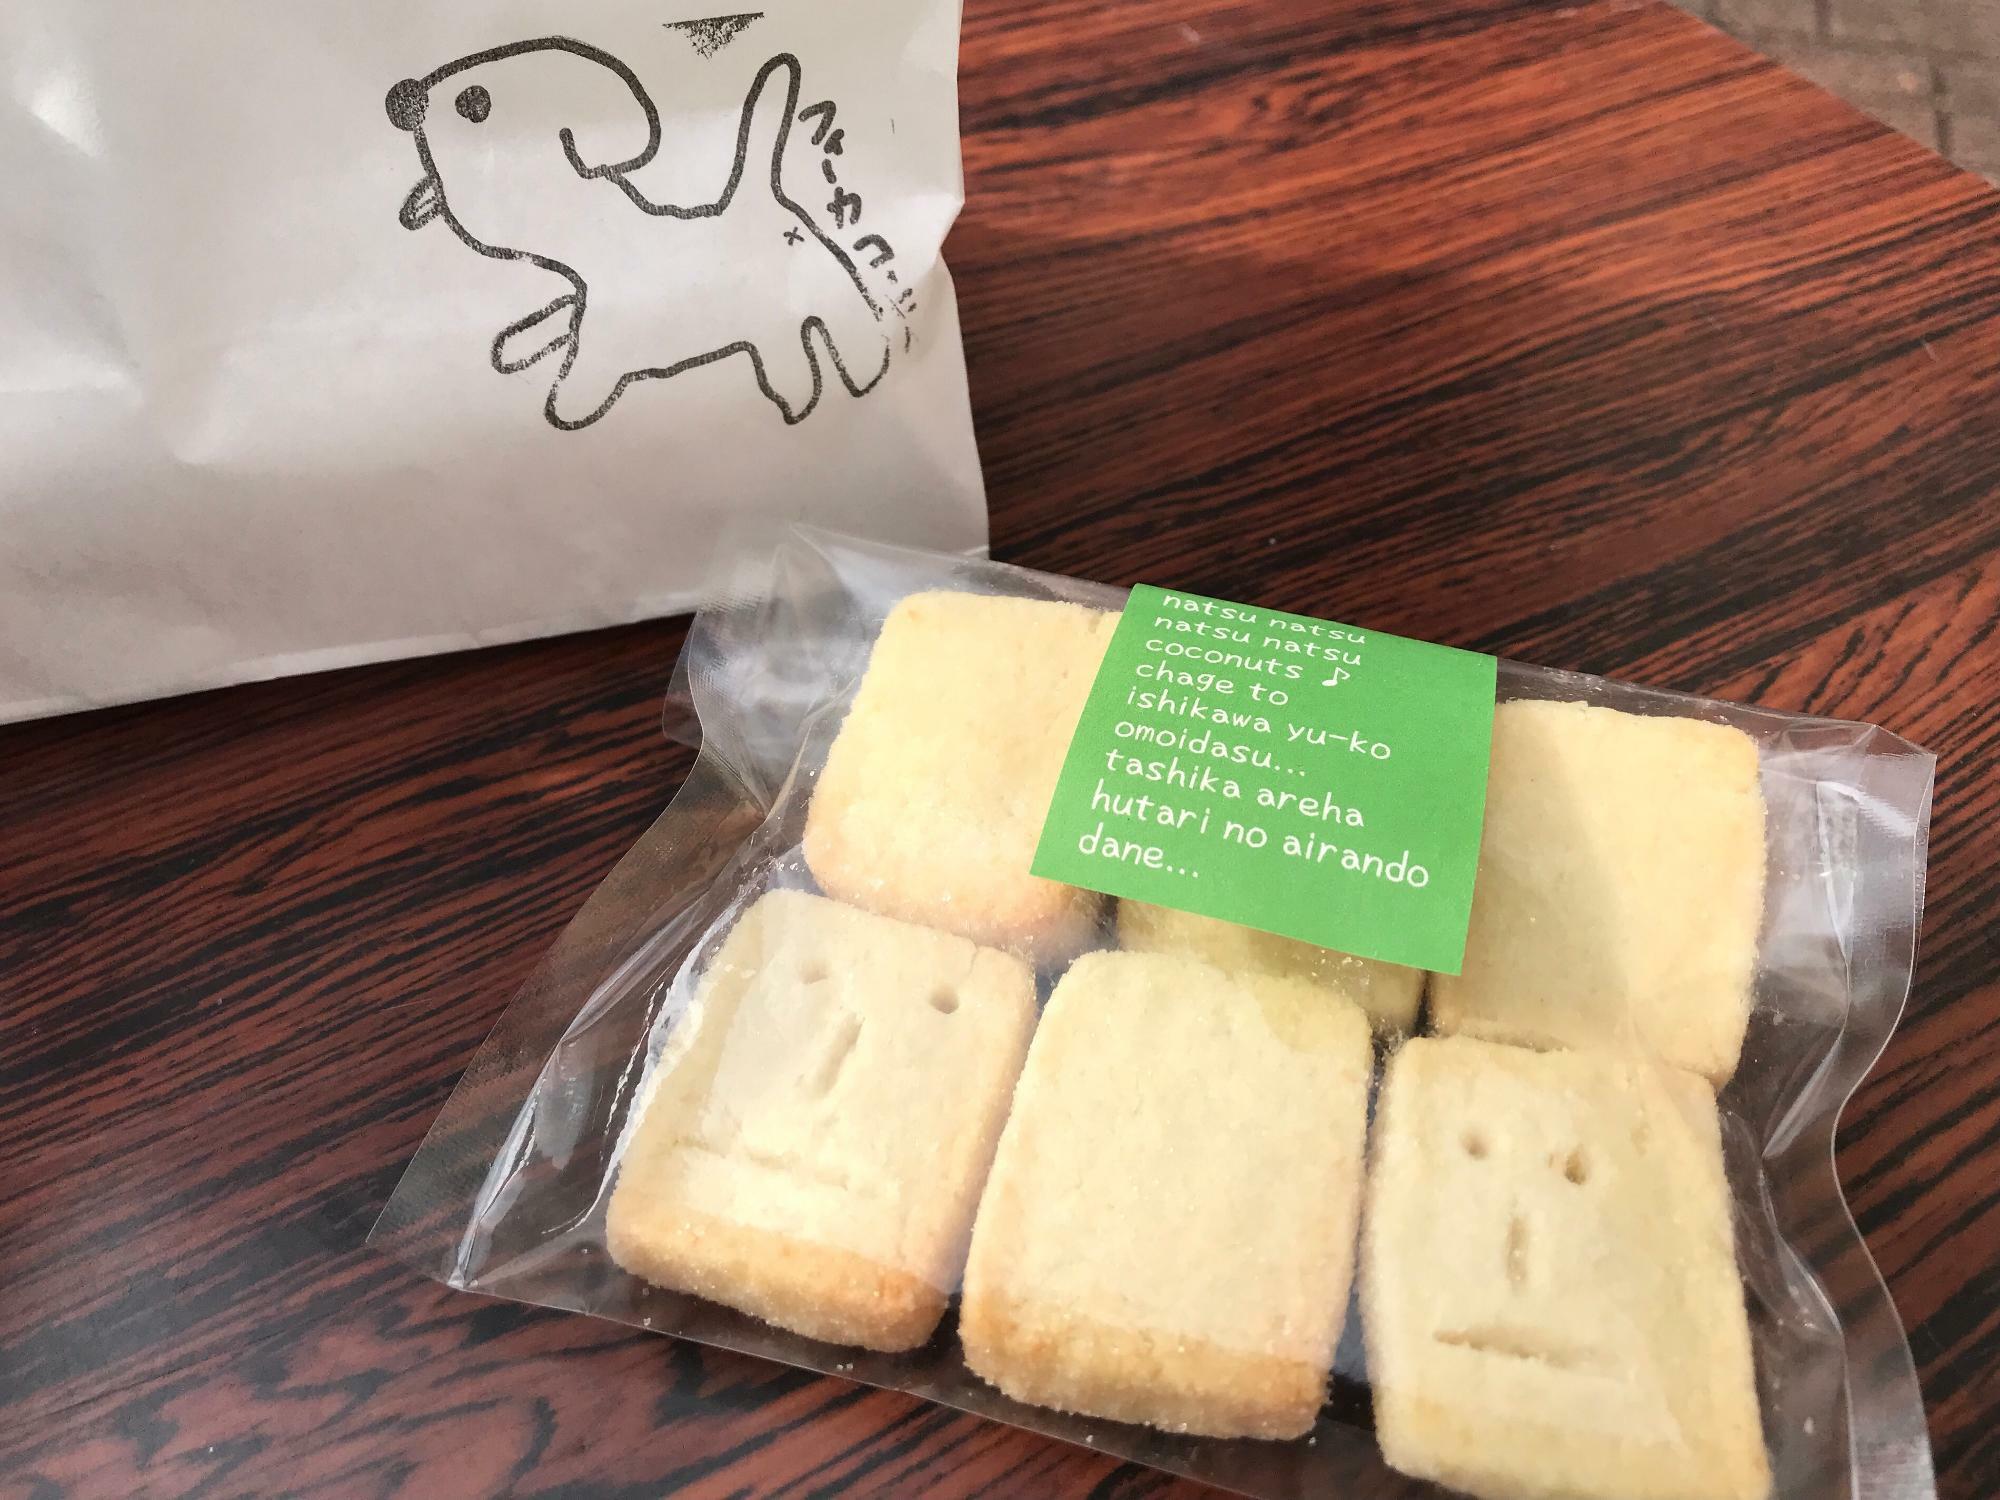 ツトムくんのココナッツクッキー(¥320)　パッケージのローマ字文章もそれぞれ違い、読んでみると面白い…